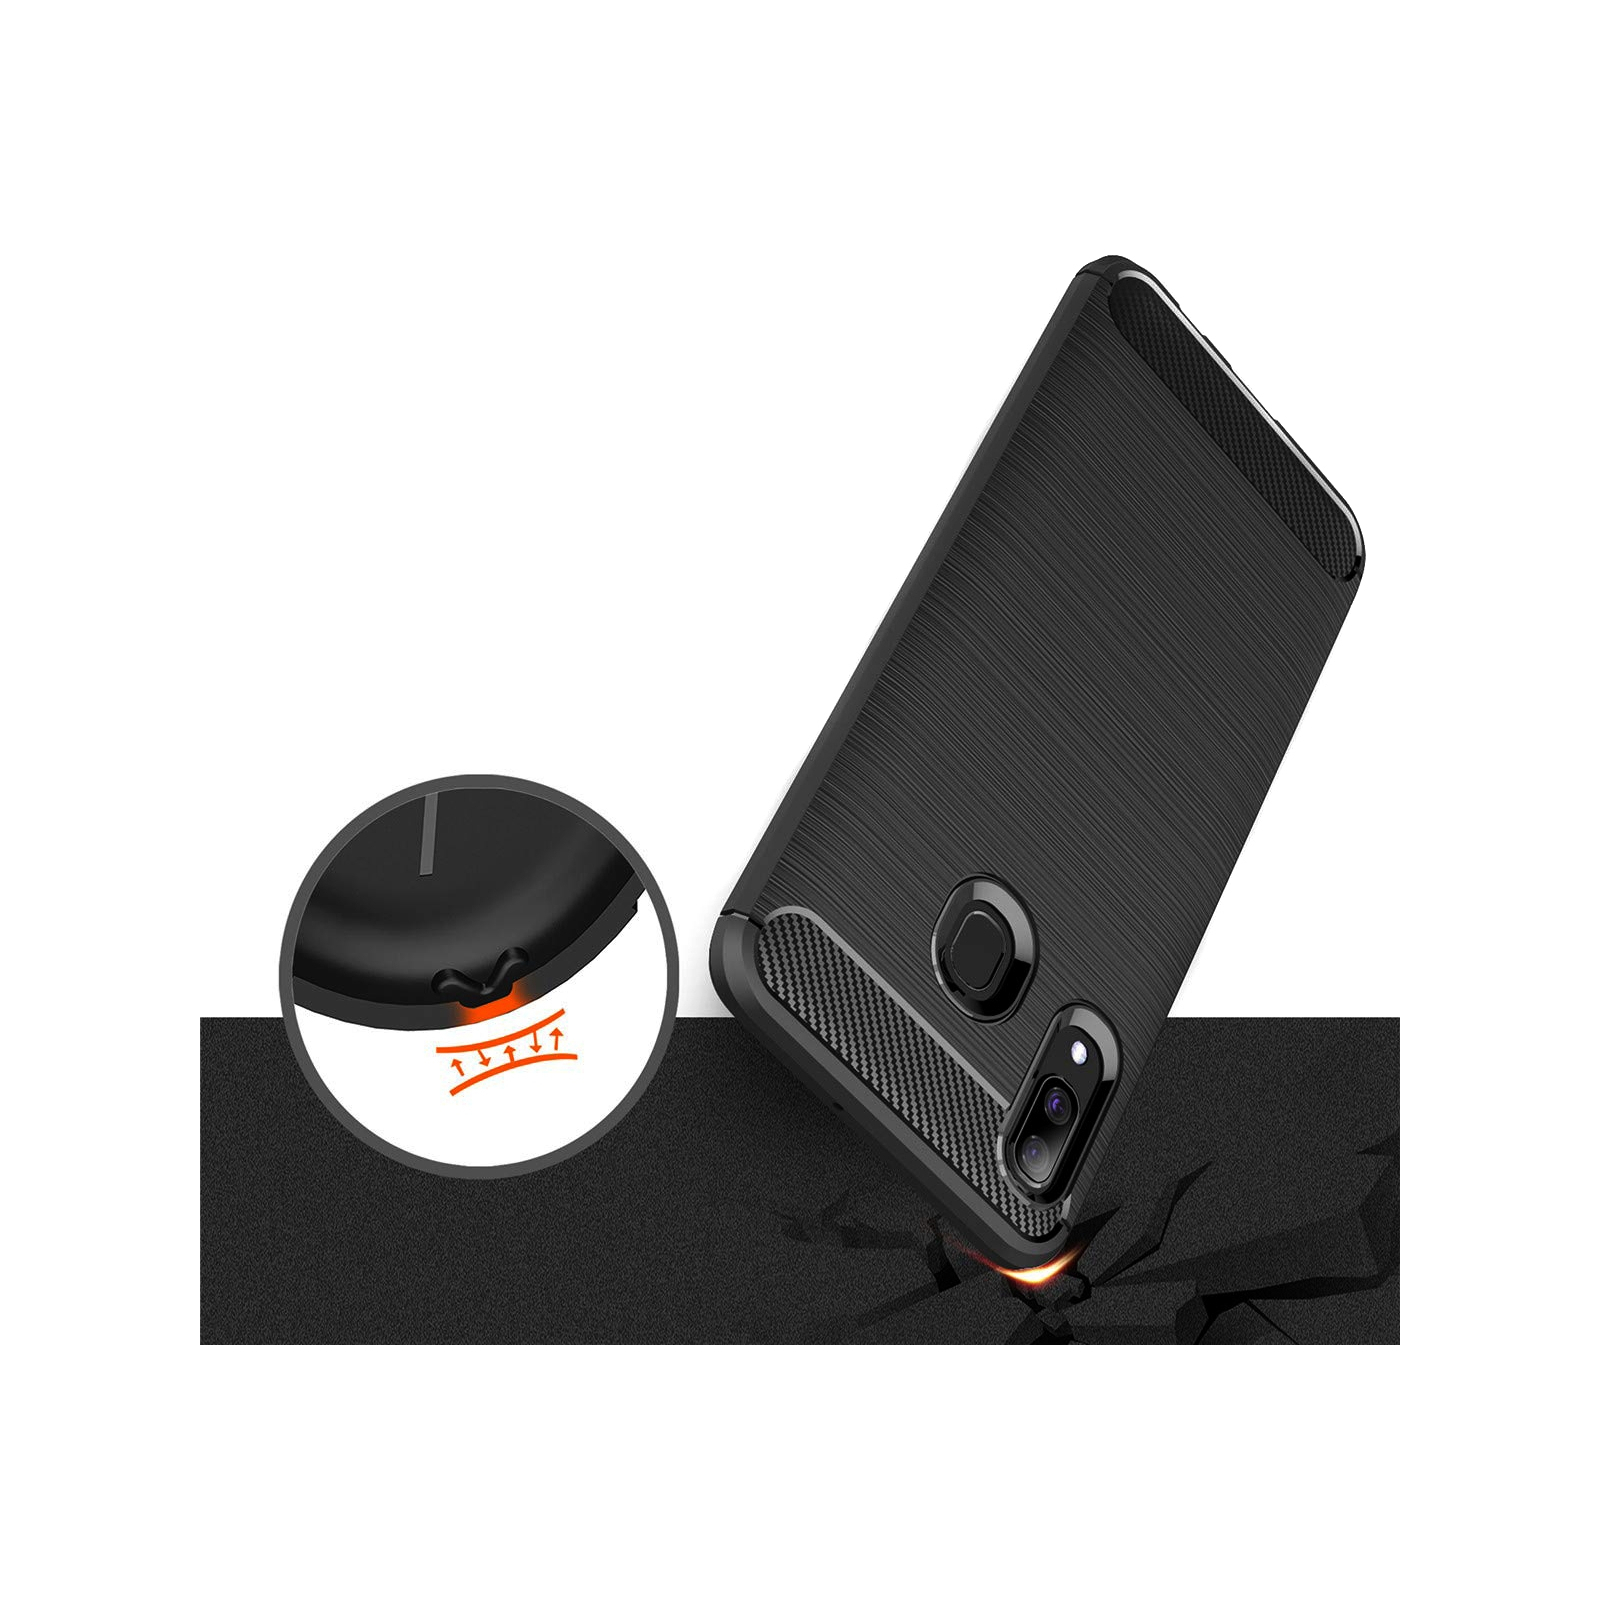 Чехол для мобильного телефона Laudtec для SAMSUNG Galaxy A30 Carbon Fiber (Black) (LT-A30B) изображение 5